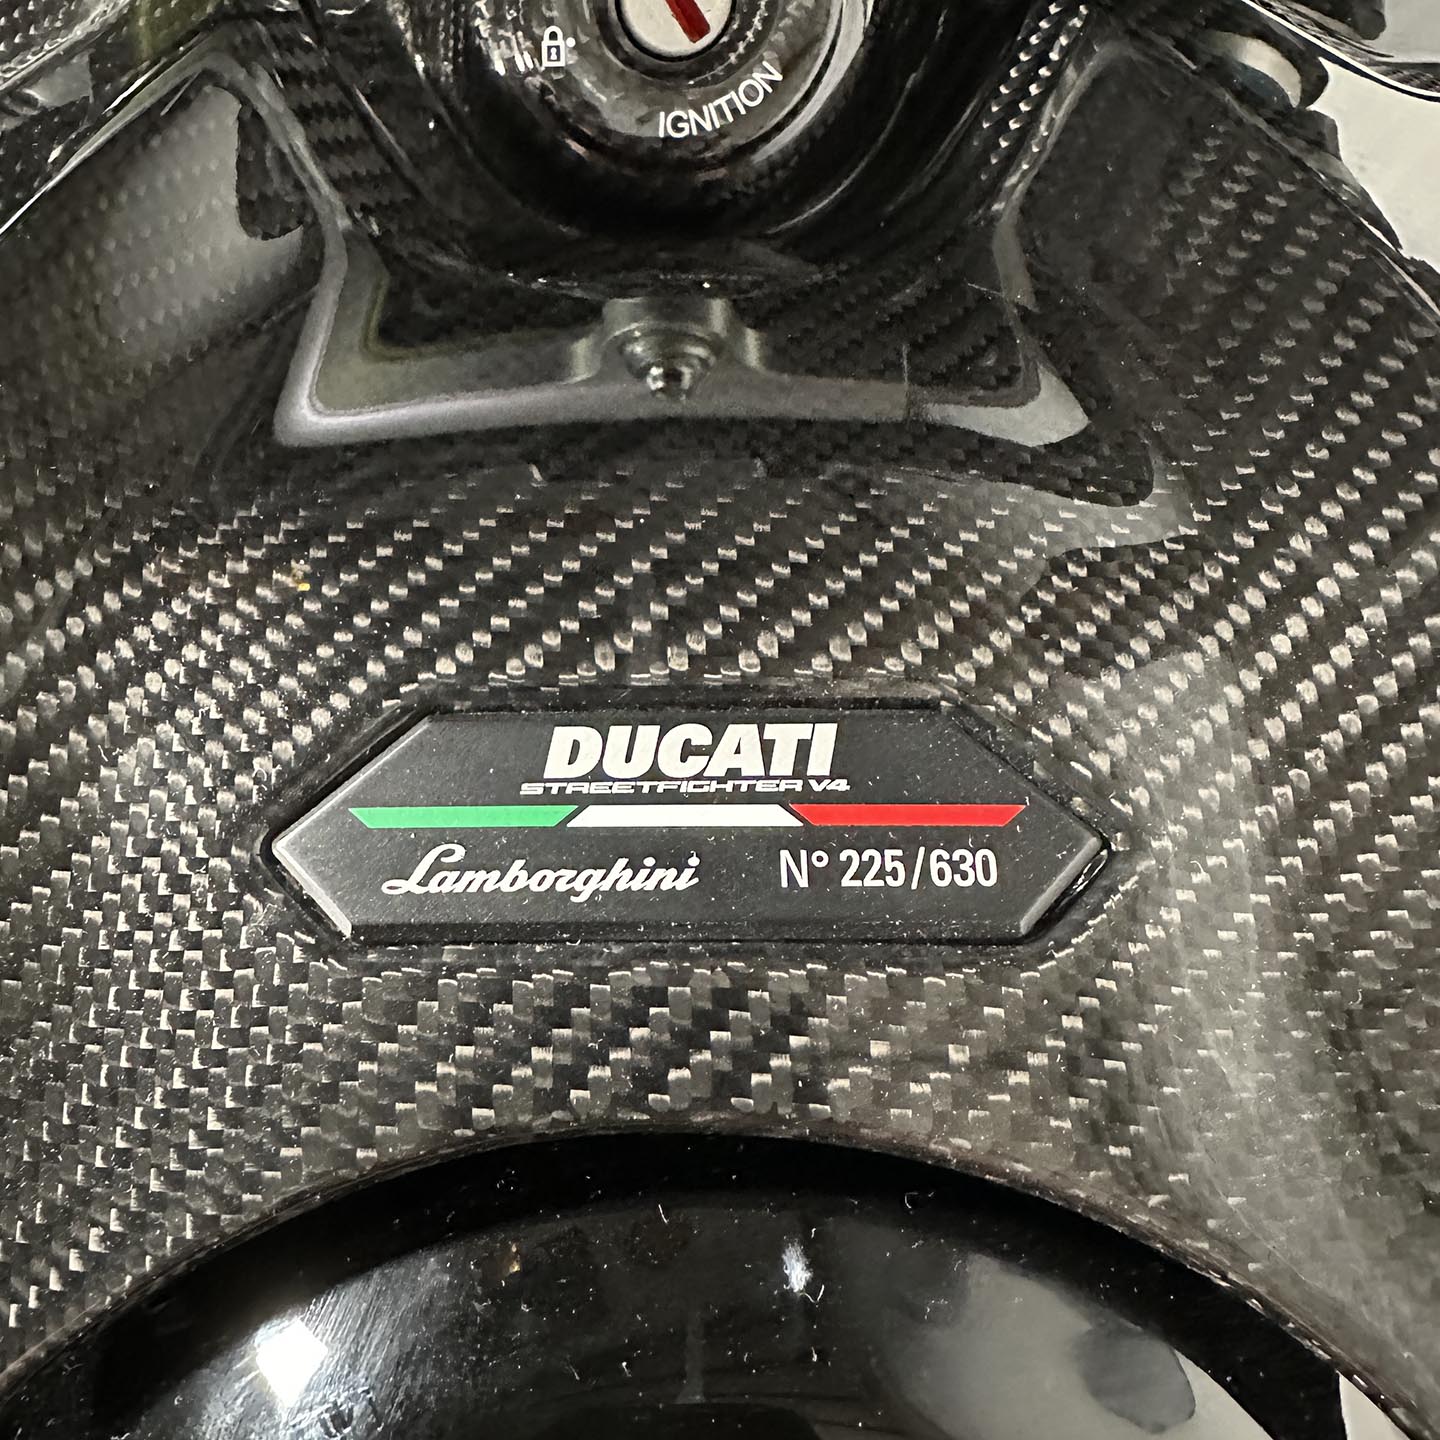 2023 Ducati Streetfighter V4 Lamborghini #225/630 (3 Miles)